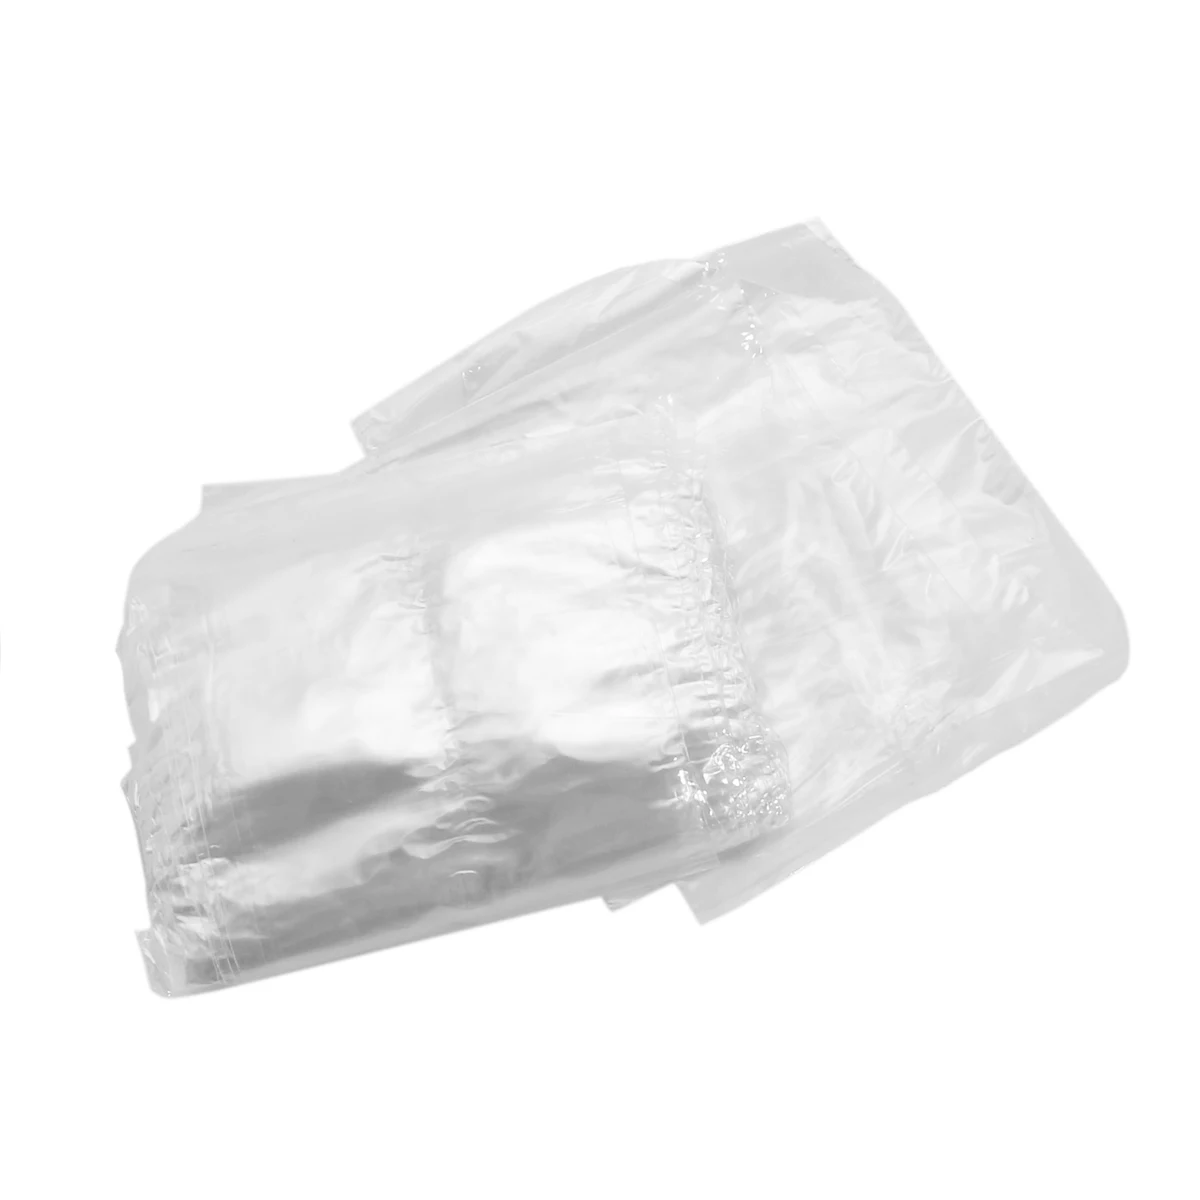 10100 шт " x 6" прозрачные термоусадочные пленки, термогерметичная упаковка, мешки для хранения, подарочная упаковка, поделки своими руками